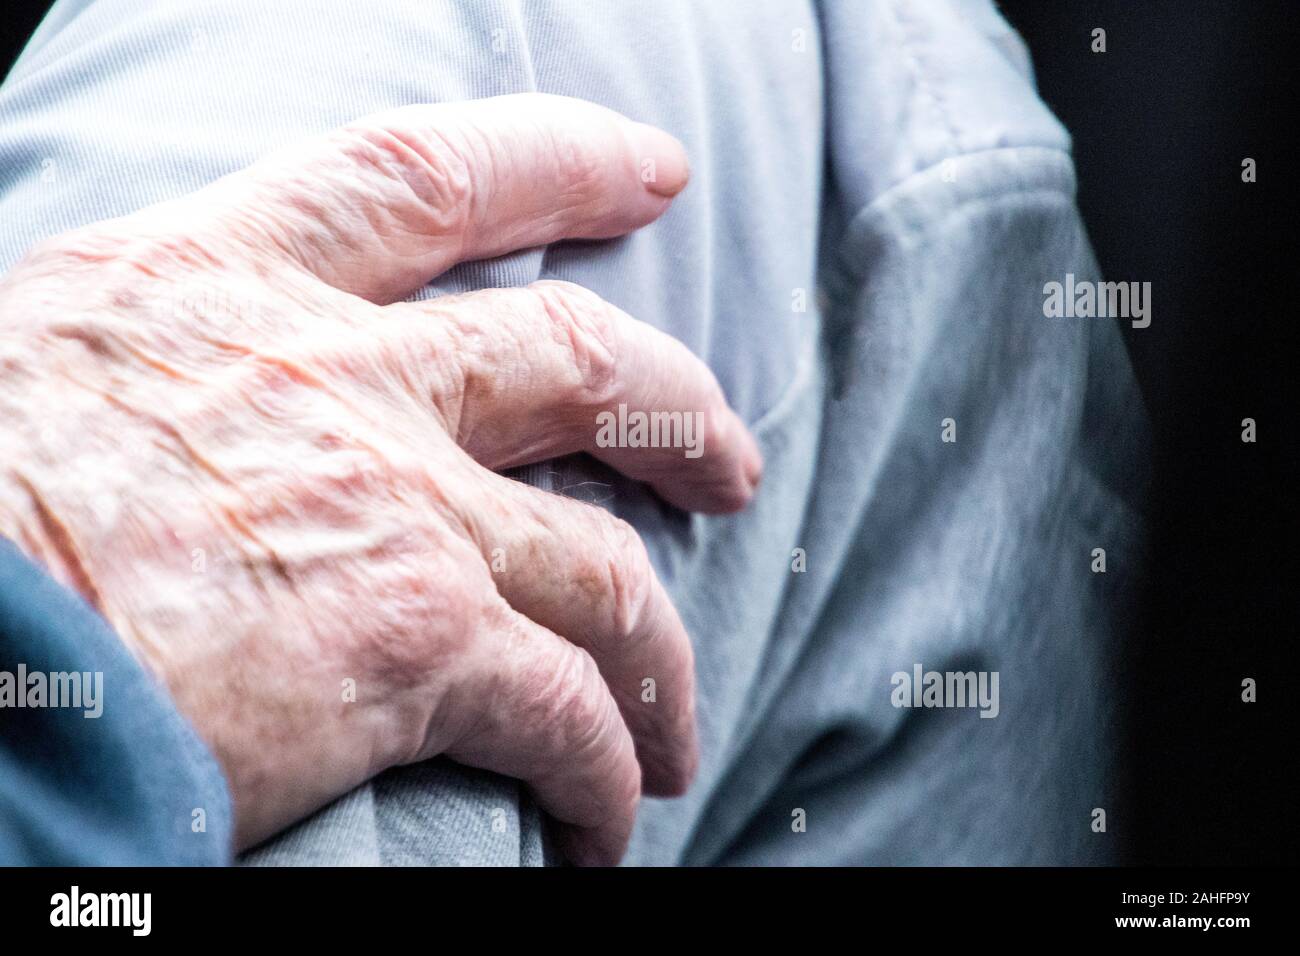 Eine Nahaufnahme der Hand eine ältere Person ruht auf dem Bein. Stockfoto